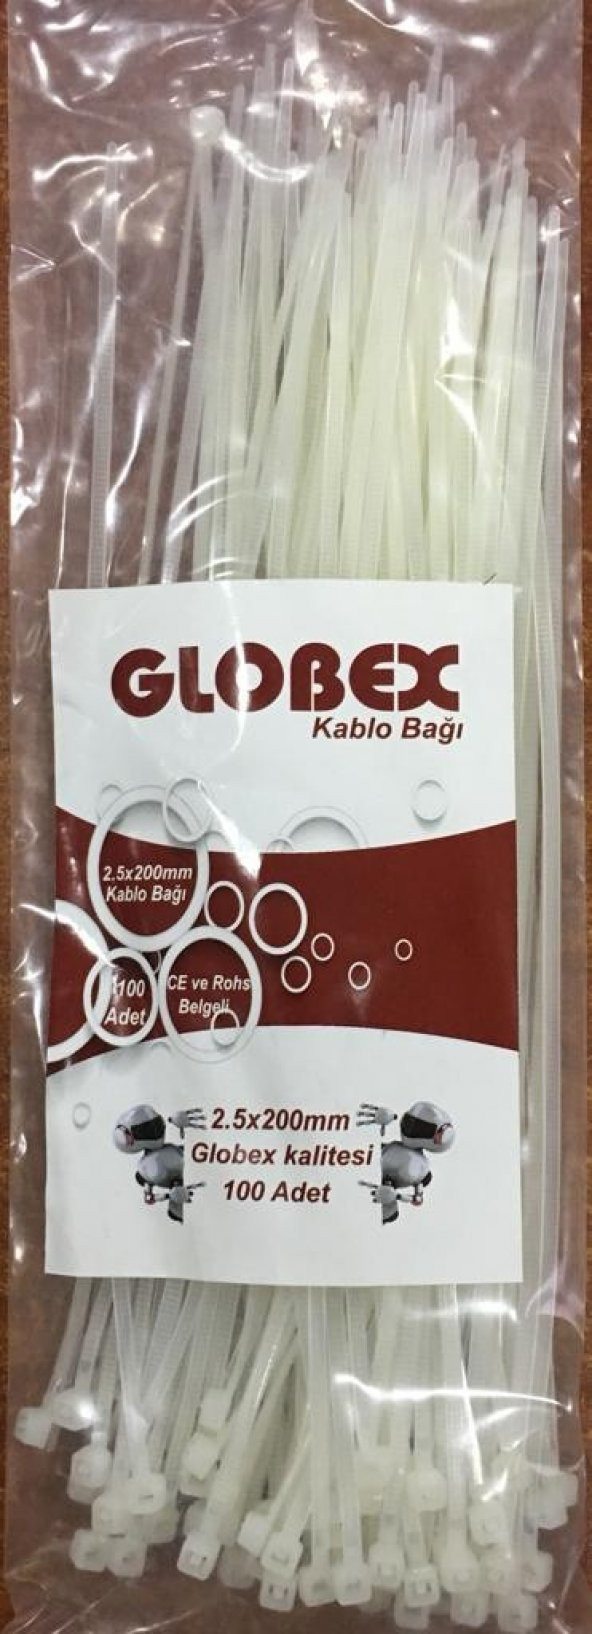 GLOBEX 2,5X200MM KABLO BAĞI